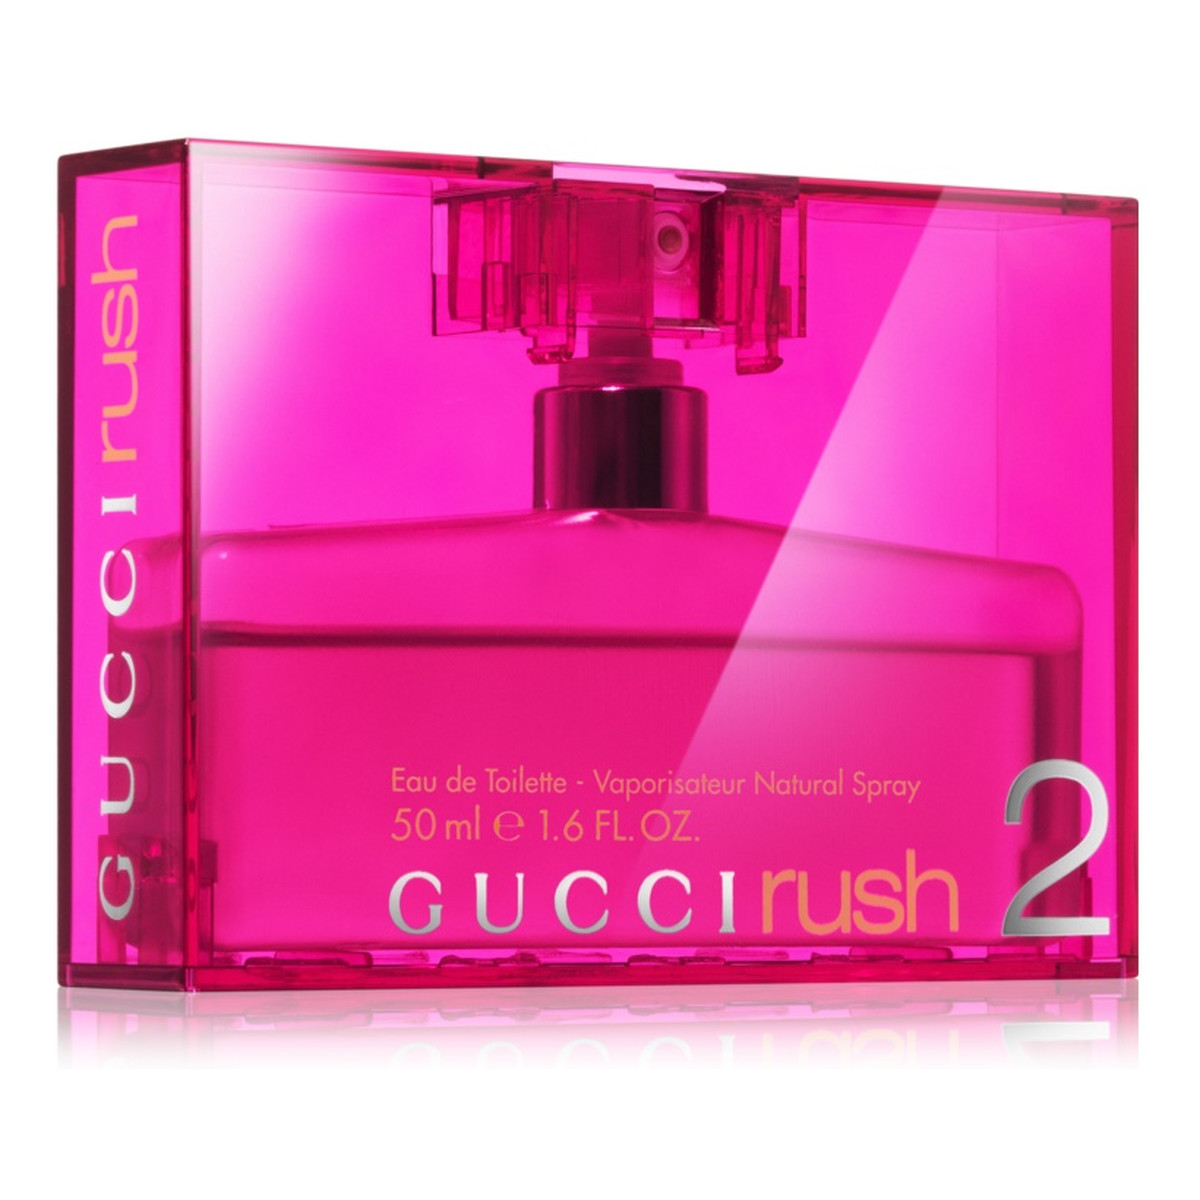 Gucci Rush 2 Woda Toaletowa 50ml